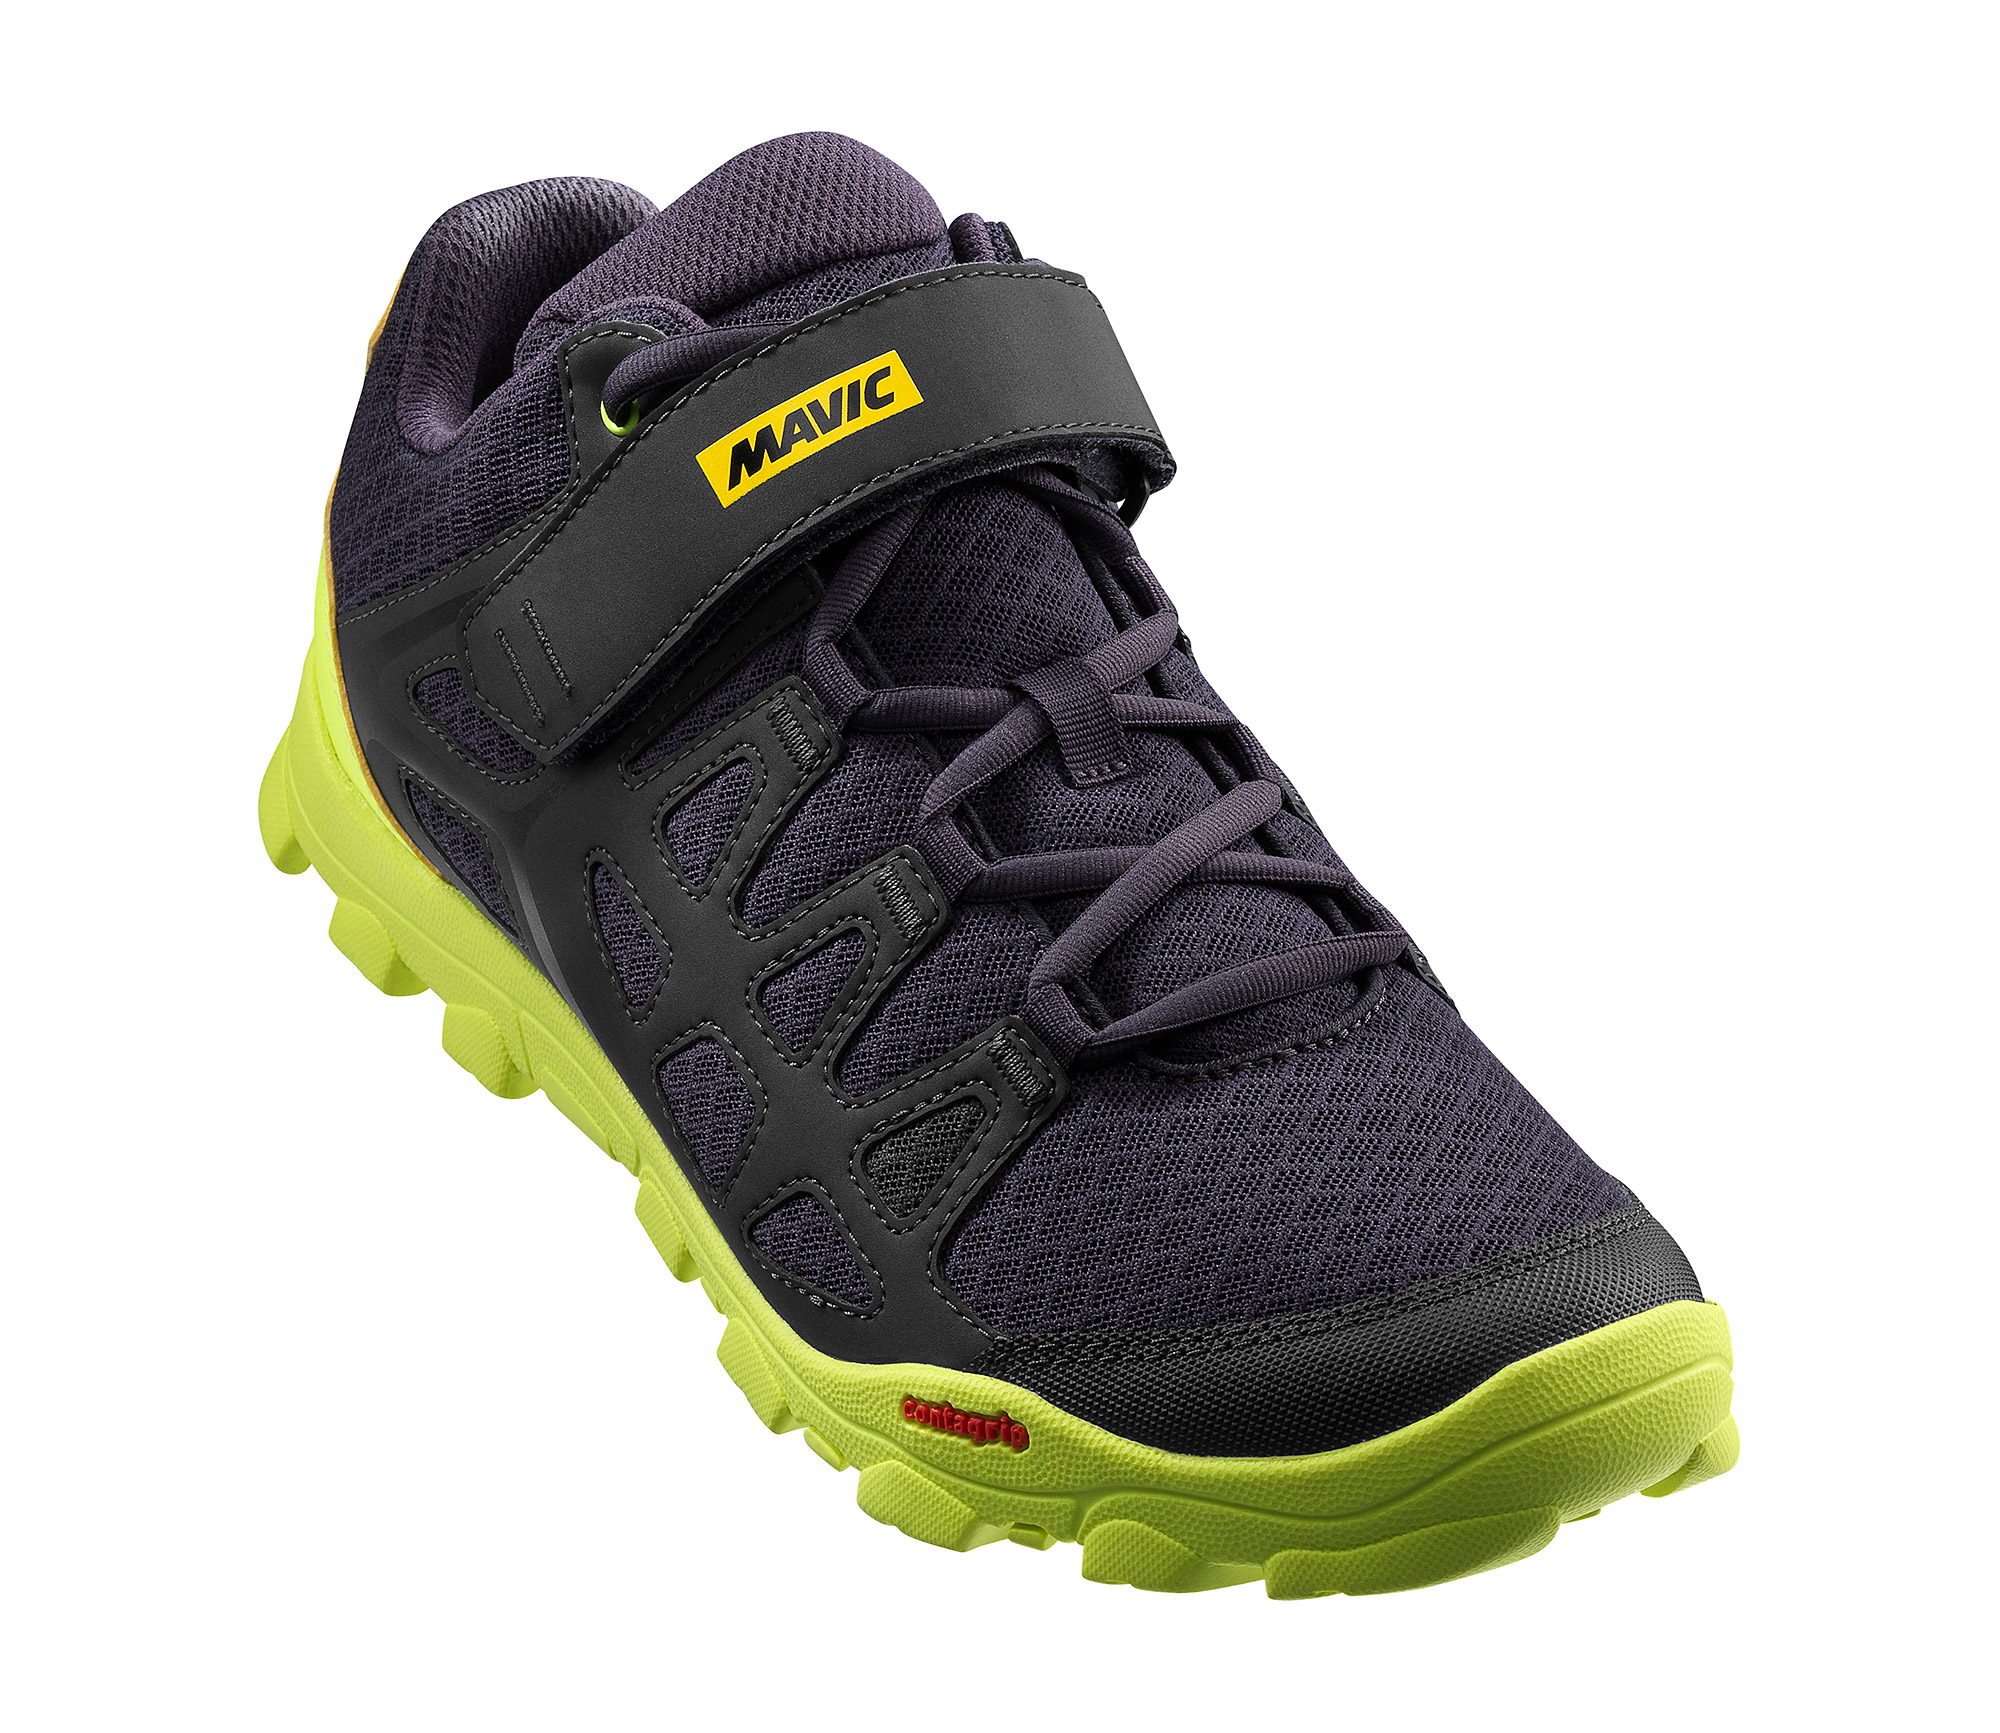 Взуття Mavic CROSSRIDE, розмір UK 7,5 (41 1/3, 261мм) Pirate Black/Safety Yellow чорно-жовта фото 